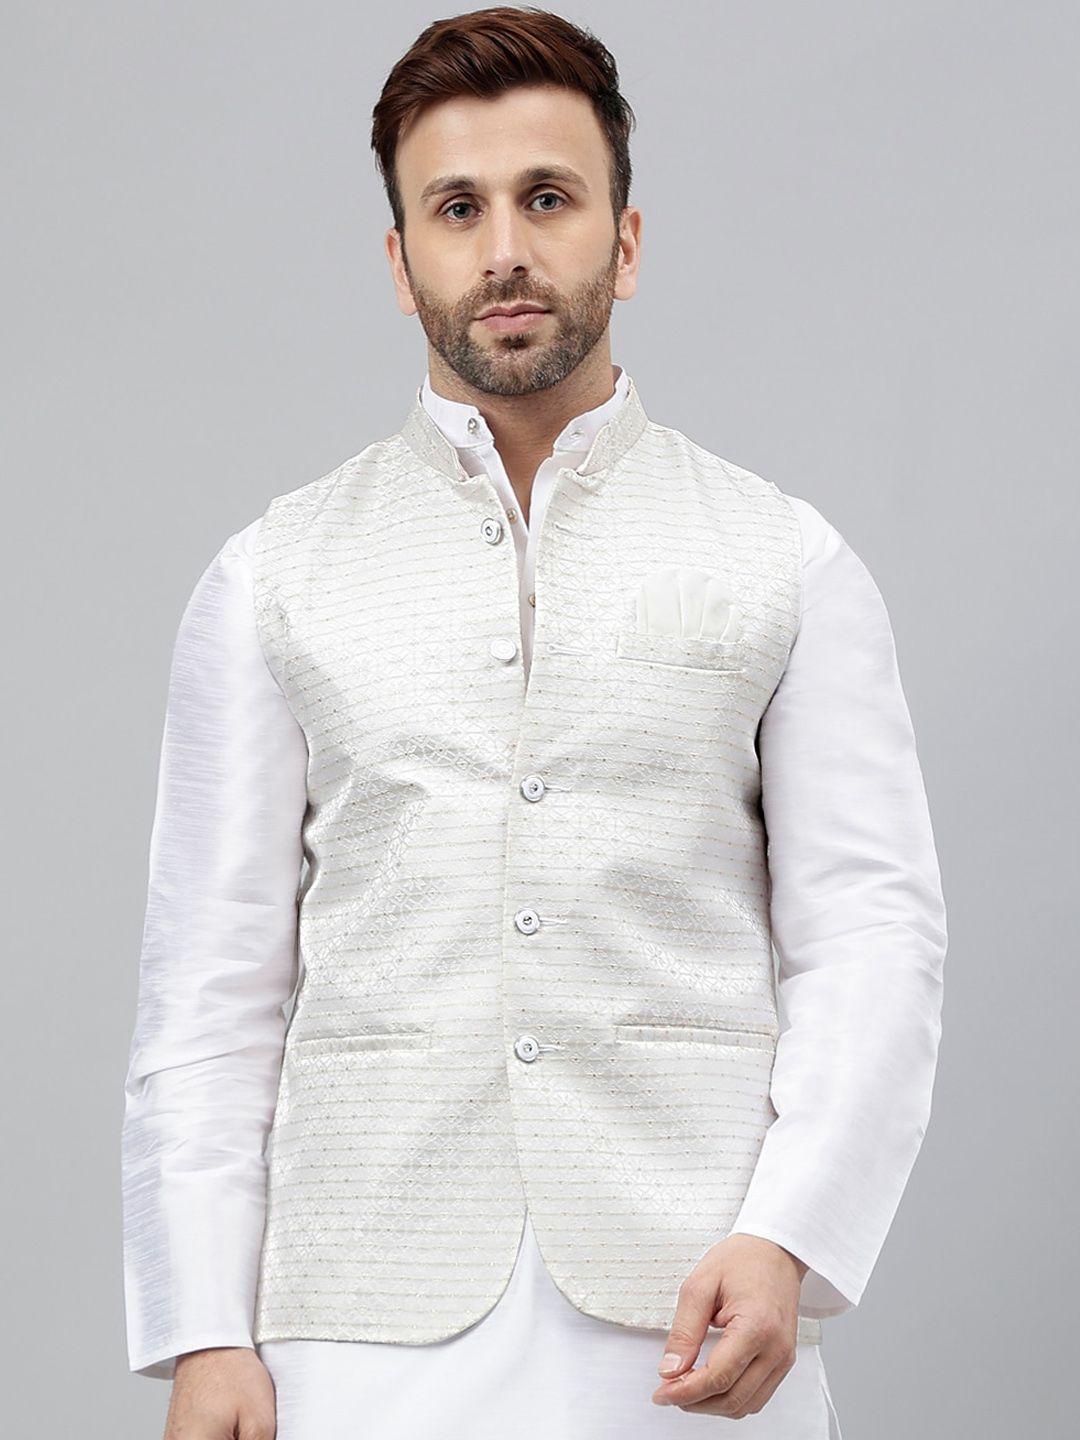 hangup-woven-design-nehru-jackets